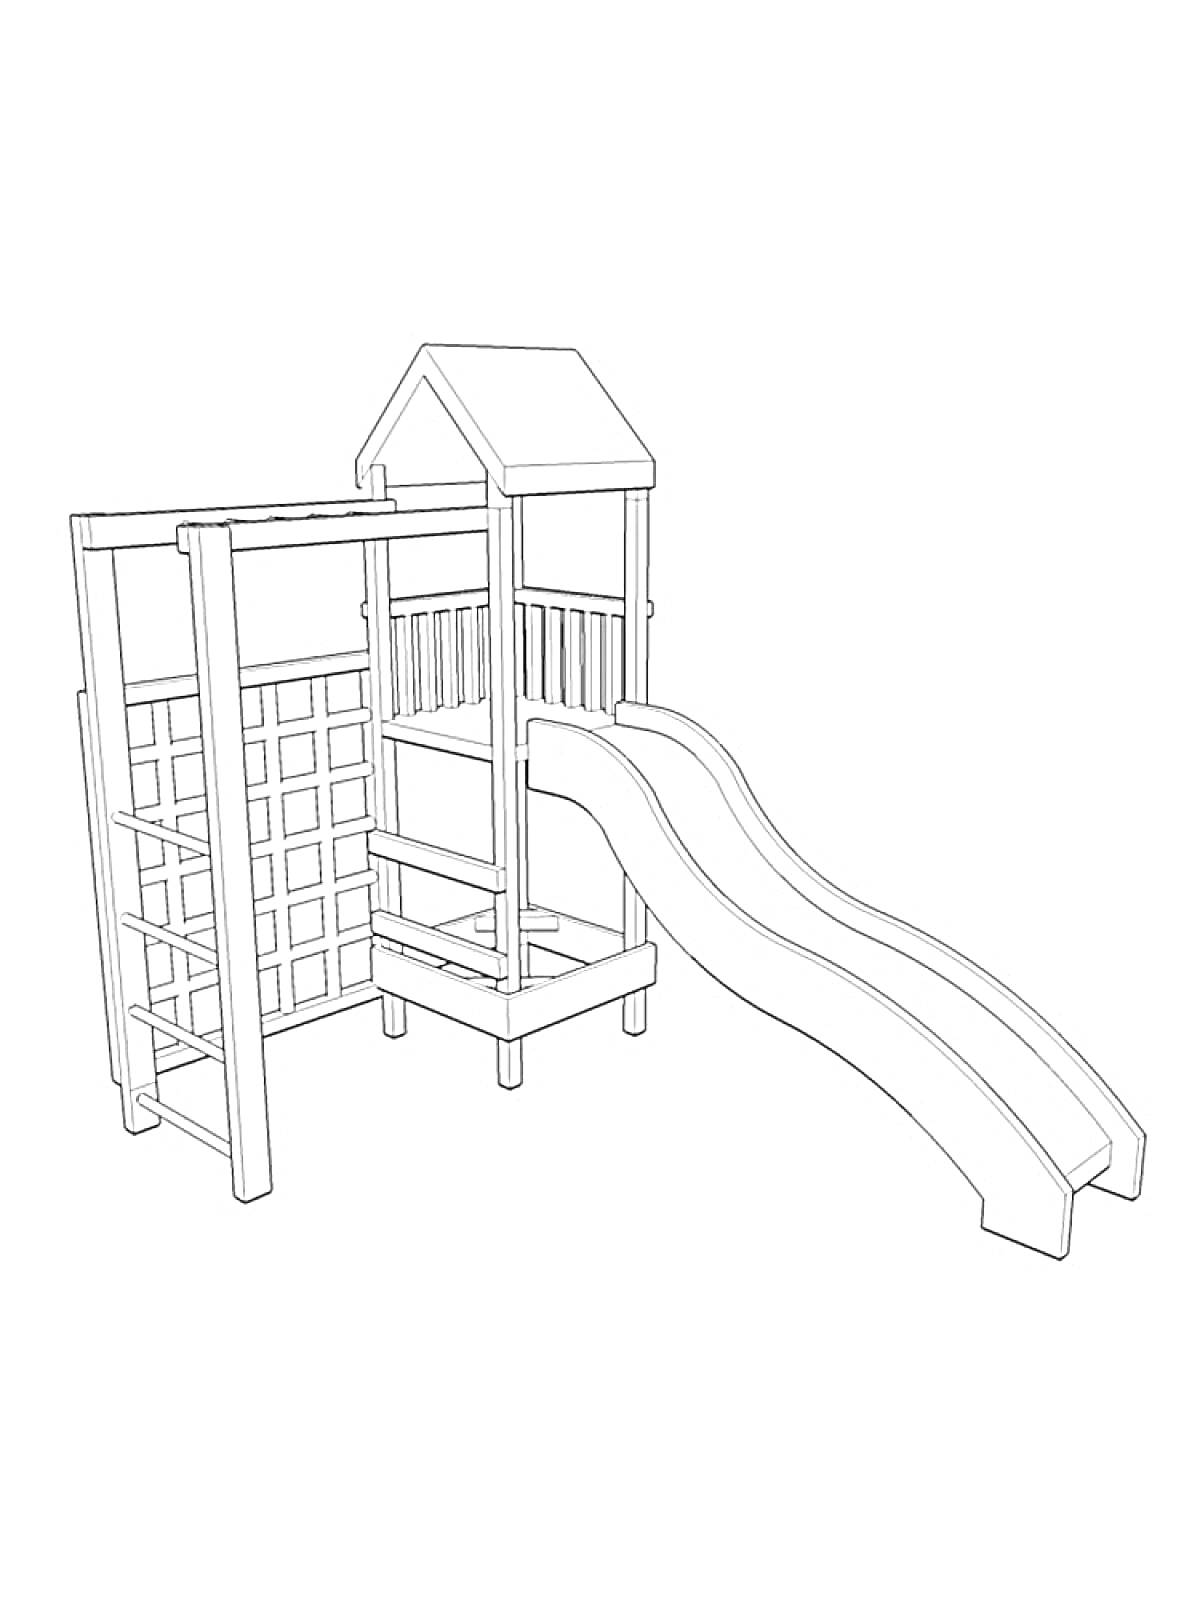 Раскраска Детская игровая площадка с горкой, лестницей и лазалкой